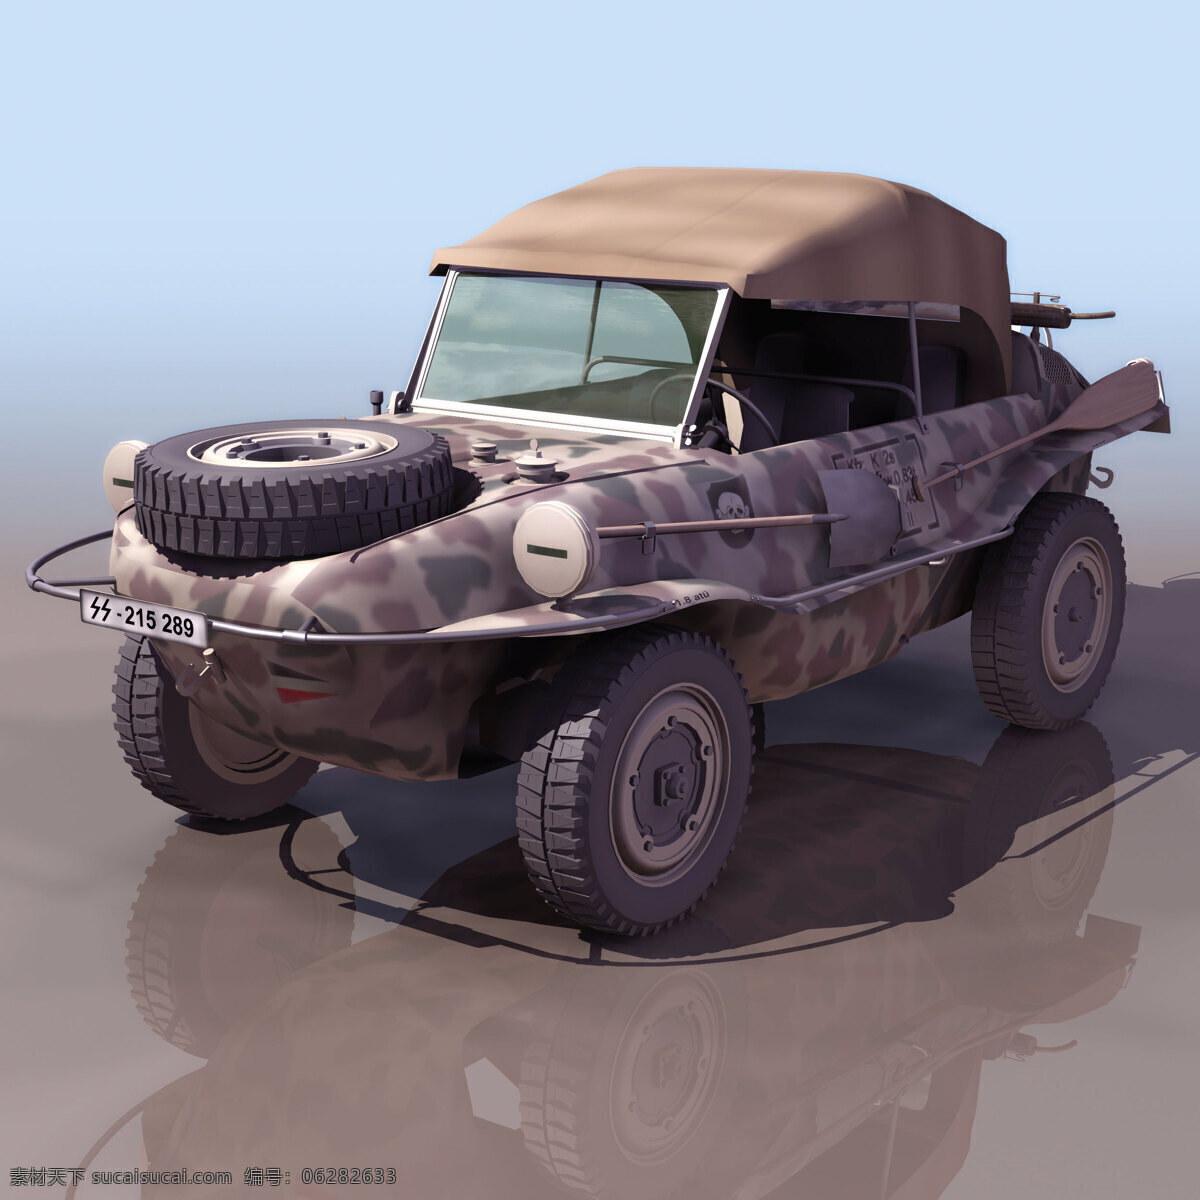 军用 汽车模型 swim 军事模型 军用汽车模型 陆军武器库 3d模型素材 其他3d模型